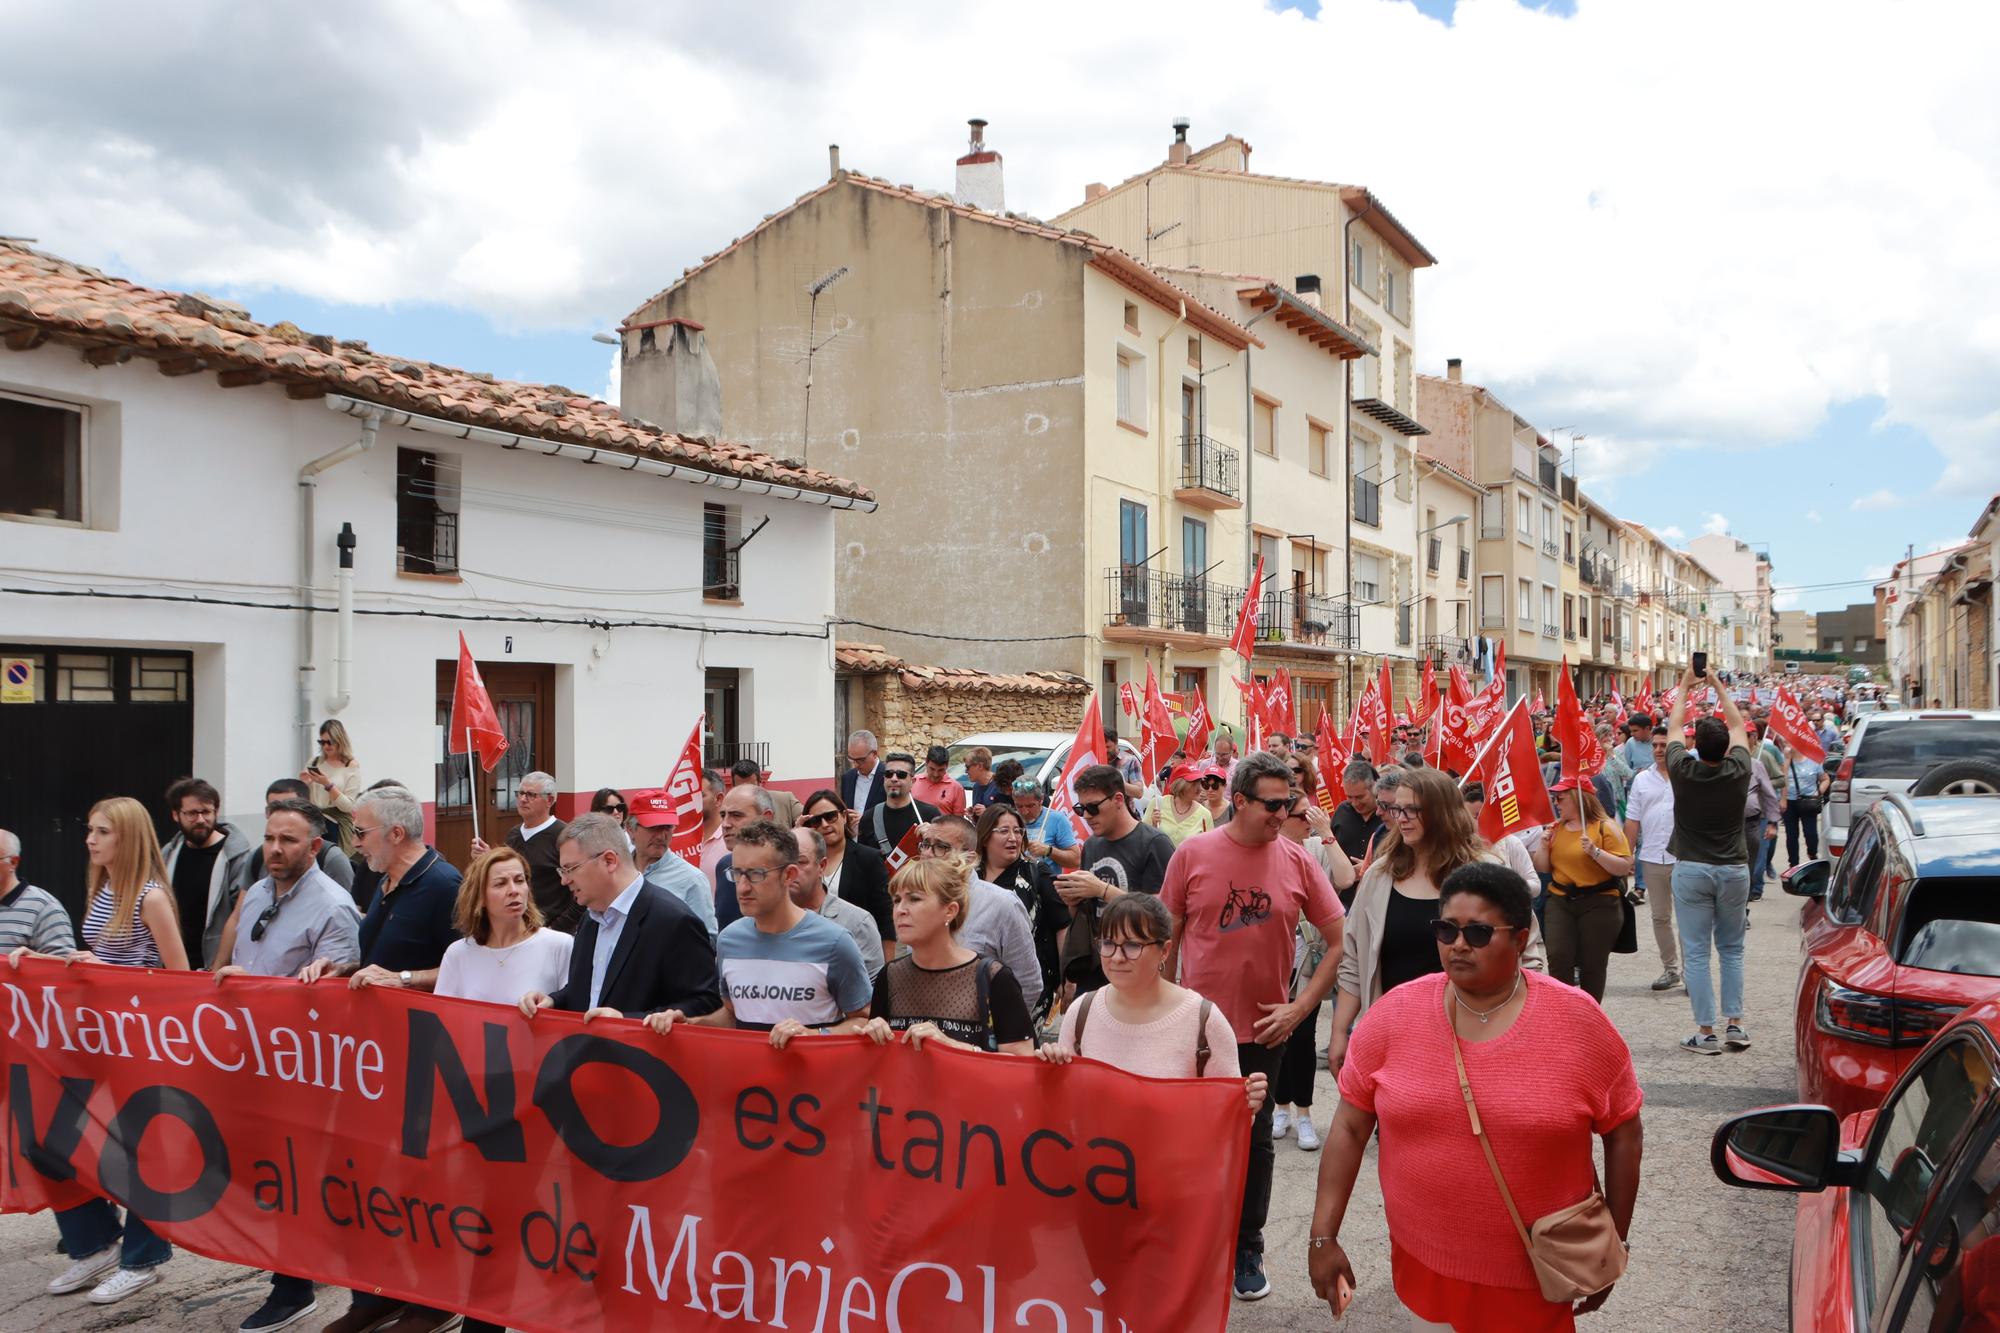 Galería de fotos: 2.000 personas claman por una solución ante el inminente cierre de Marie Claire